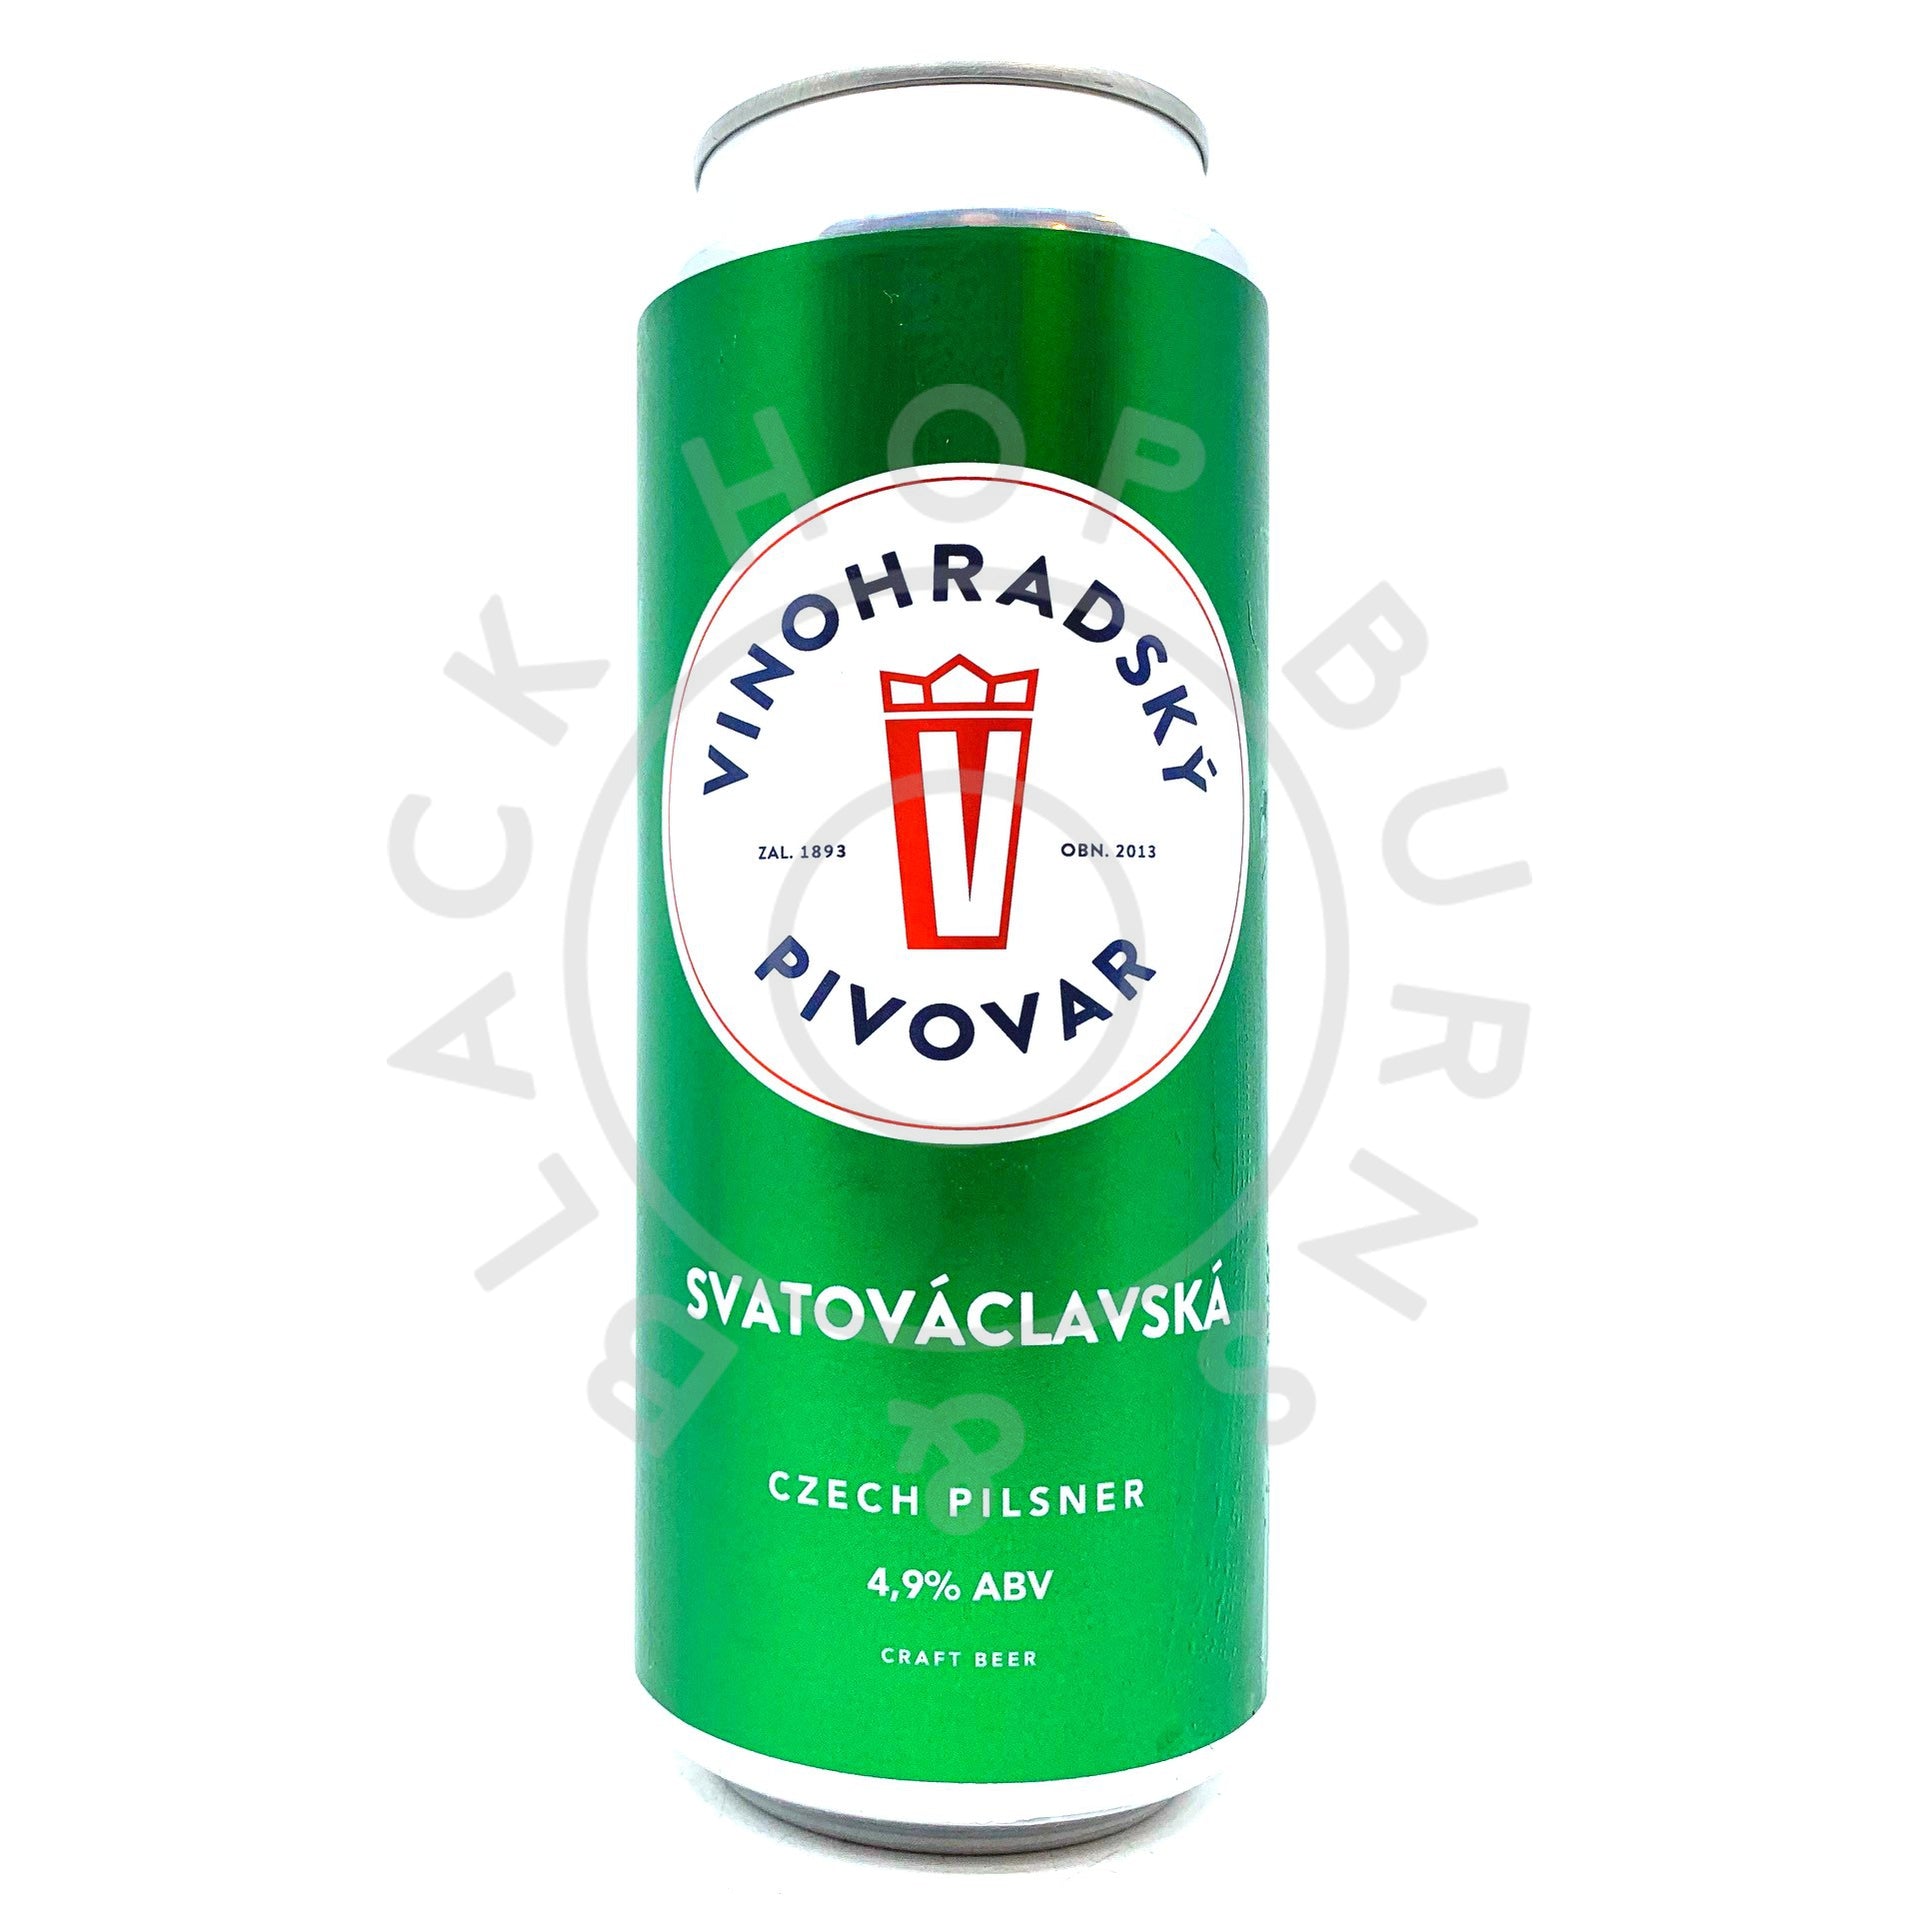 Vinohradsky Pivovar Svatovaclavska Fresh Hop Lager 4.9% (500ml can)-Hop Burns & Black